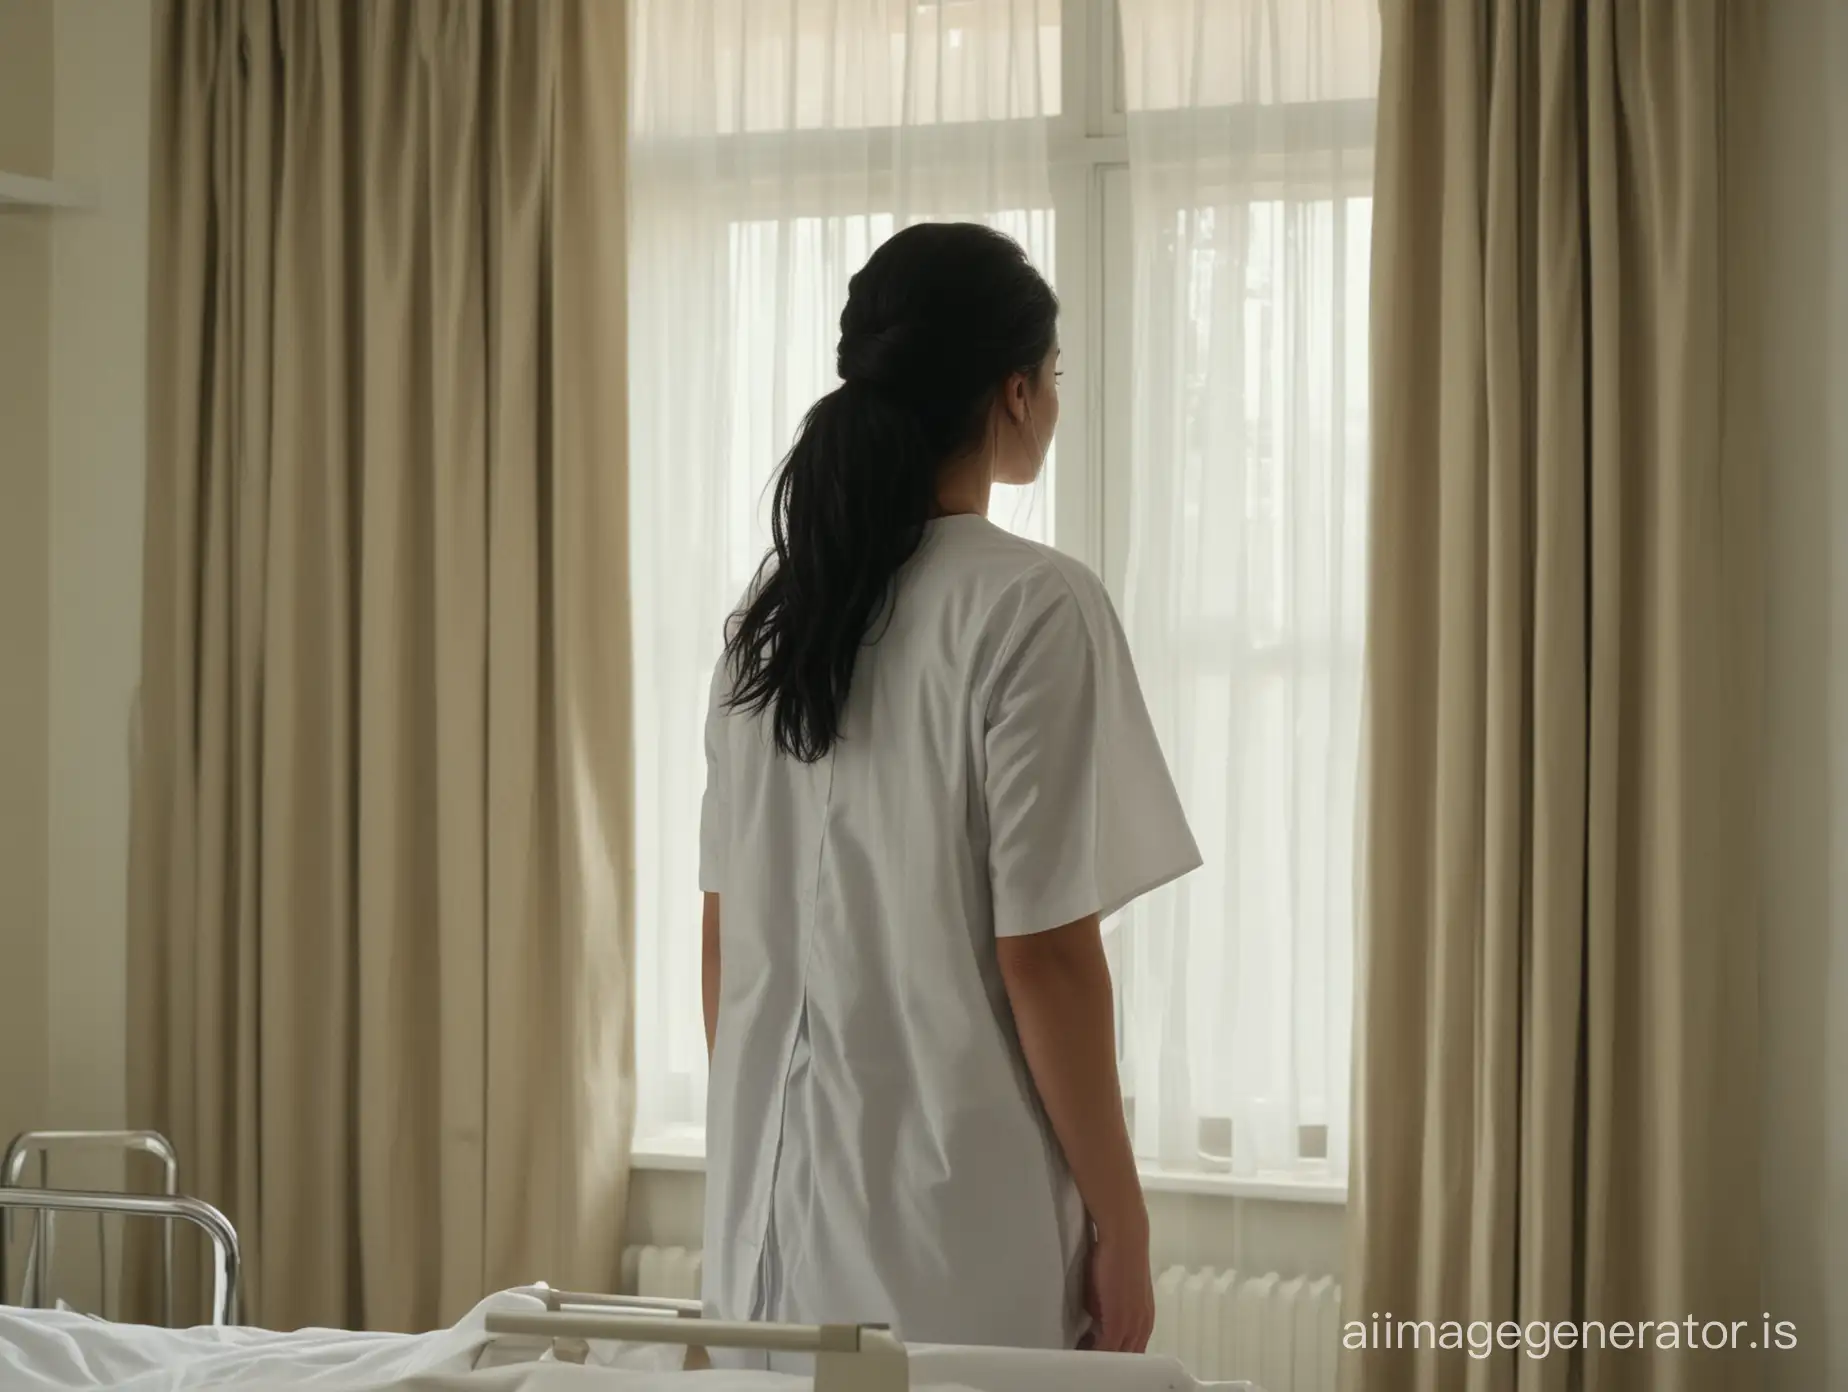 Больничная палата. Кадр на Медсестру - она стоит к зрителю спиной, возле окна, - и открывает шторы больничного окна. Описение медсестры: девушка 21 лет, черные длинные волосы уложенные в прическу, в медицинском халате